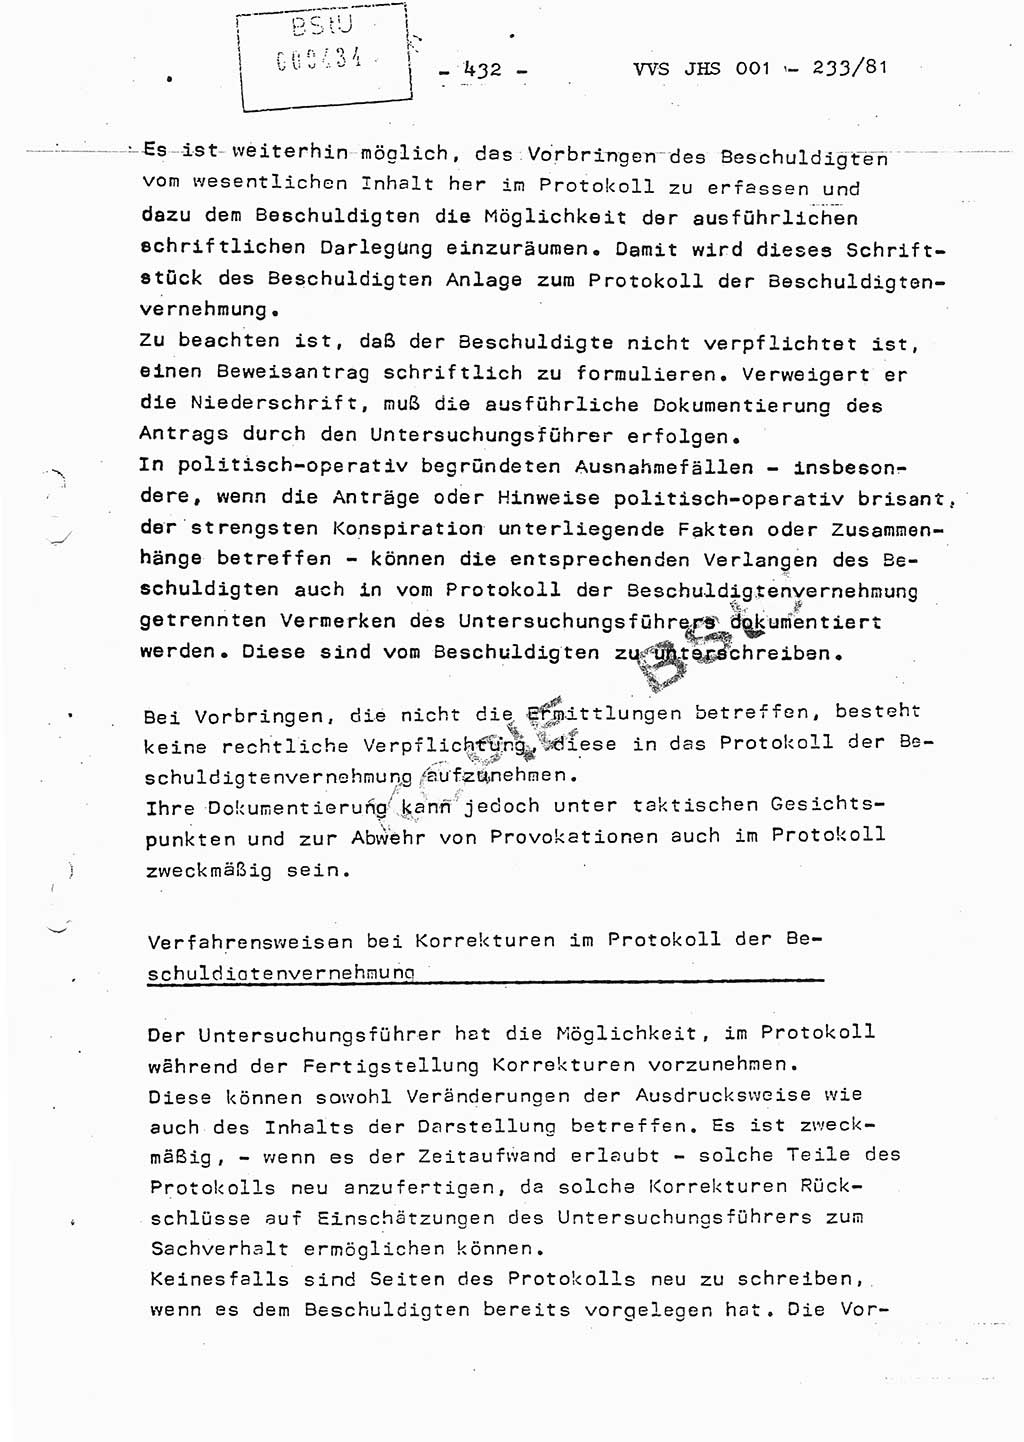 Dissertation Oberstleutnant Horst Zank (JHS), Oberstleutnant Dr. Karl-Heinz Knoblauch (JHS), Oberstleutnant Gustav-Adolf Kowalewski (HA Ⅸ), Oberstleutnant Wolfgang Plötner (HA Ⅸ), Ministerium für Staatssicherheit (MfS) [Deutsche Demokratische Republik (DDR)], Juristische Hochschule (JHS), Vertrauliche Verschlußsache (VVS) o001-233/81, Potsdam 1981, Blatt 432 (Diss. MfS DDR JHS VVS o001-233/81 1981, Bl. 432)